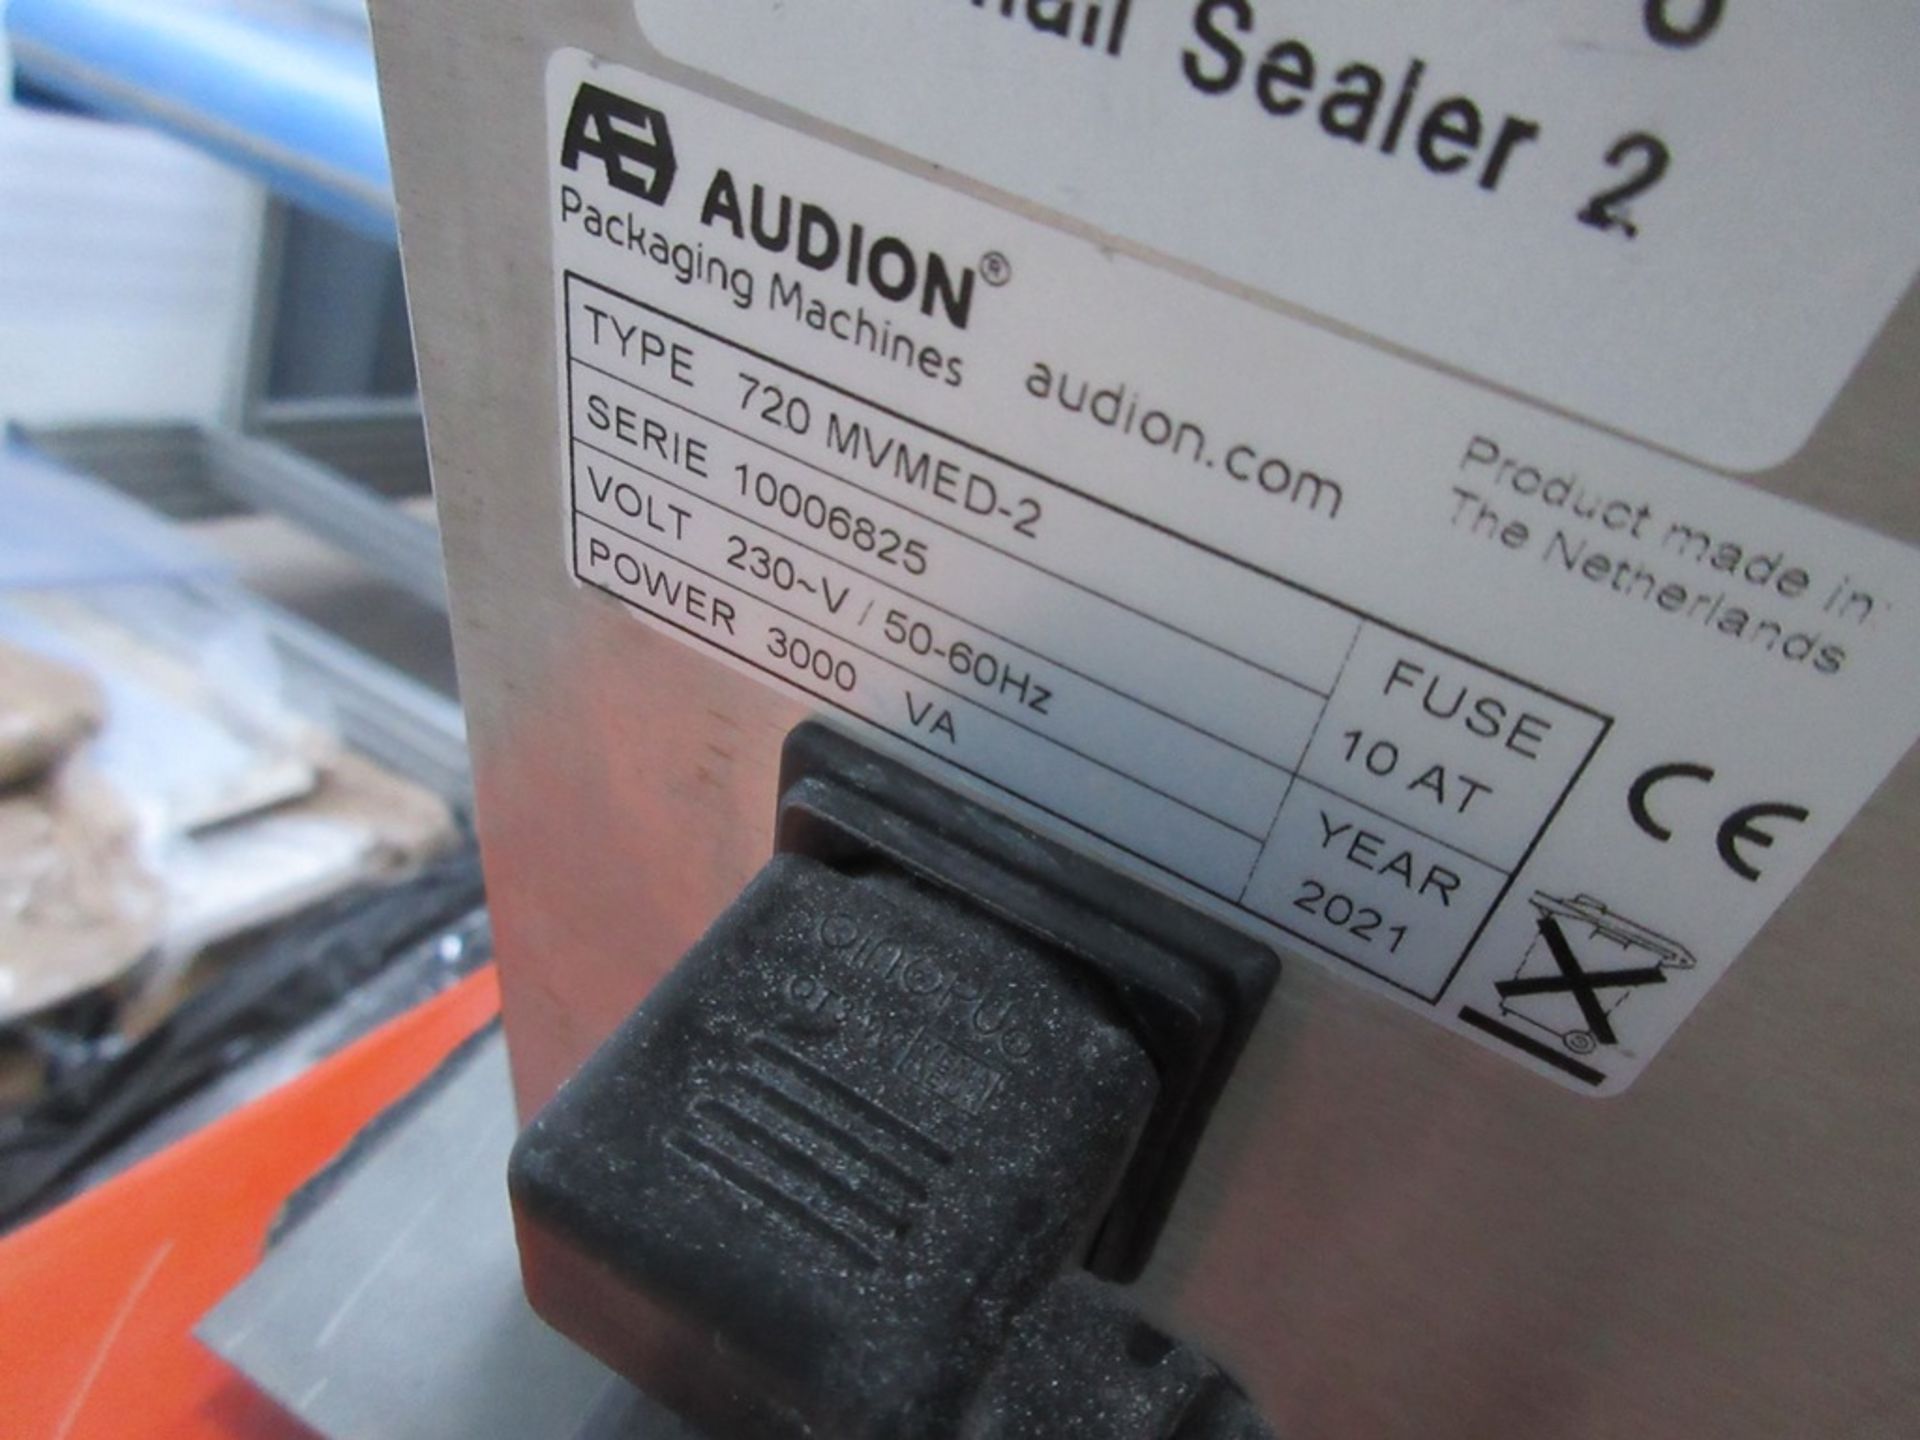 Audion 720 MVMED-2 heat sealer, 720mm width, serial no. 10006825 (2021) - Image 3 of 5